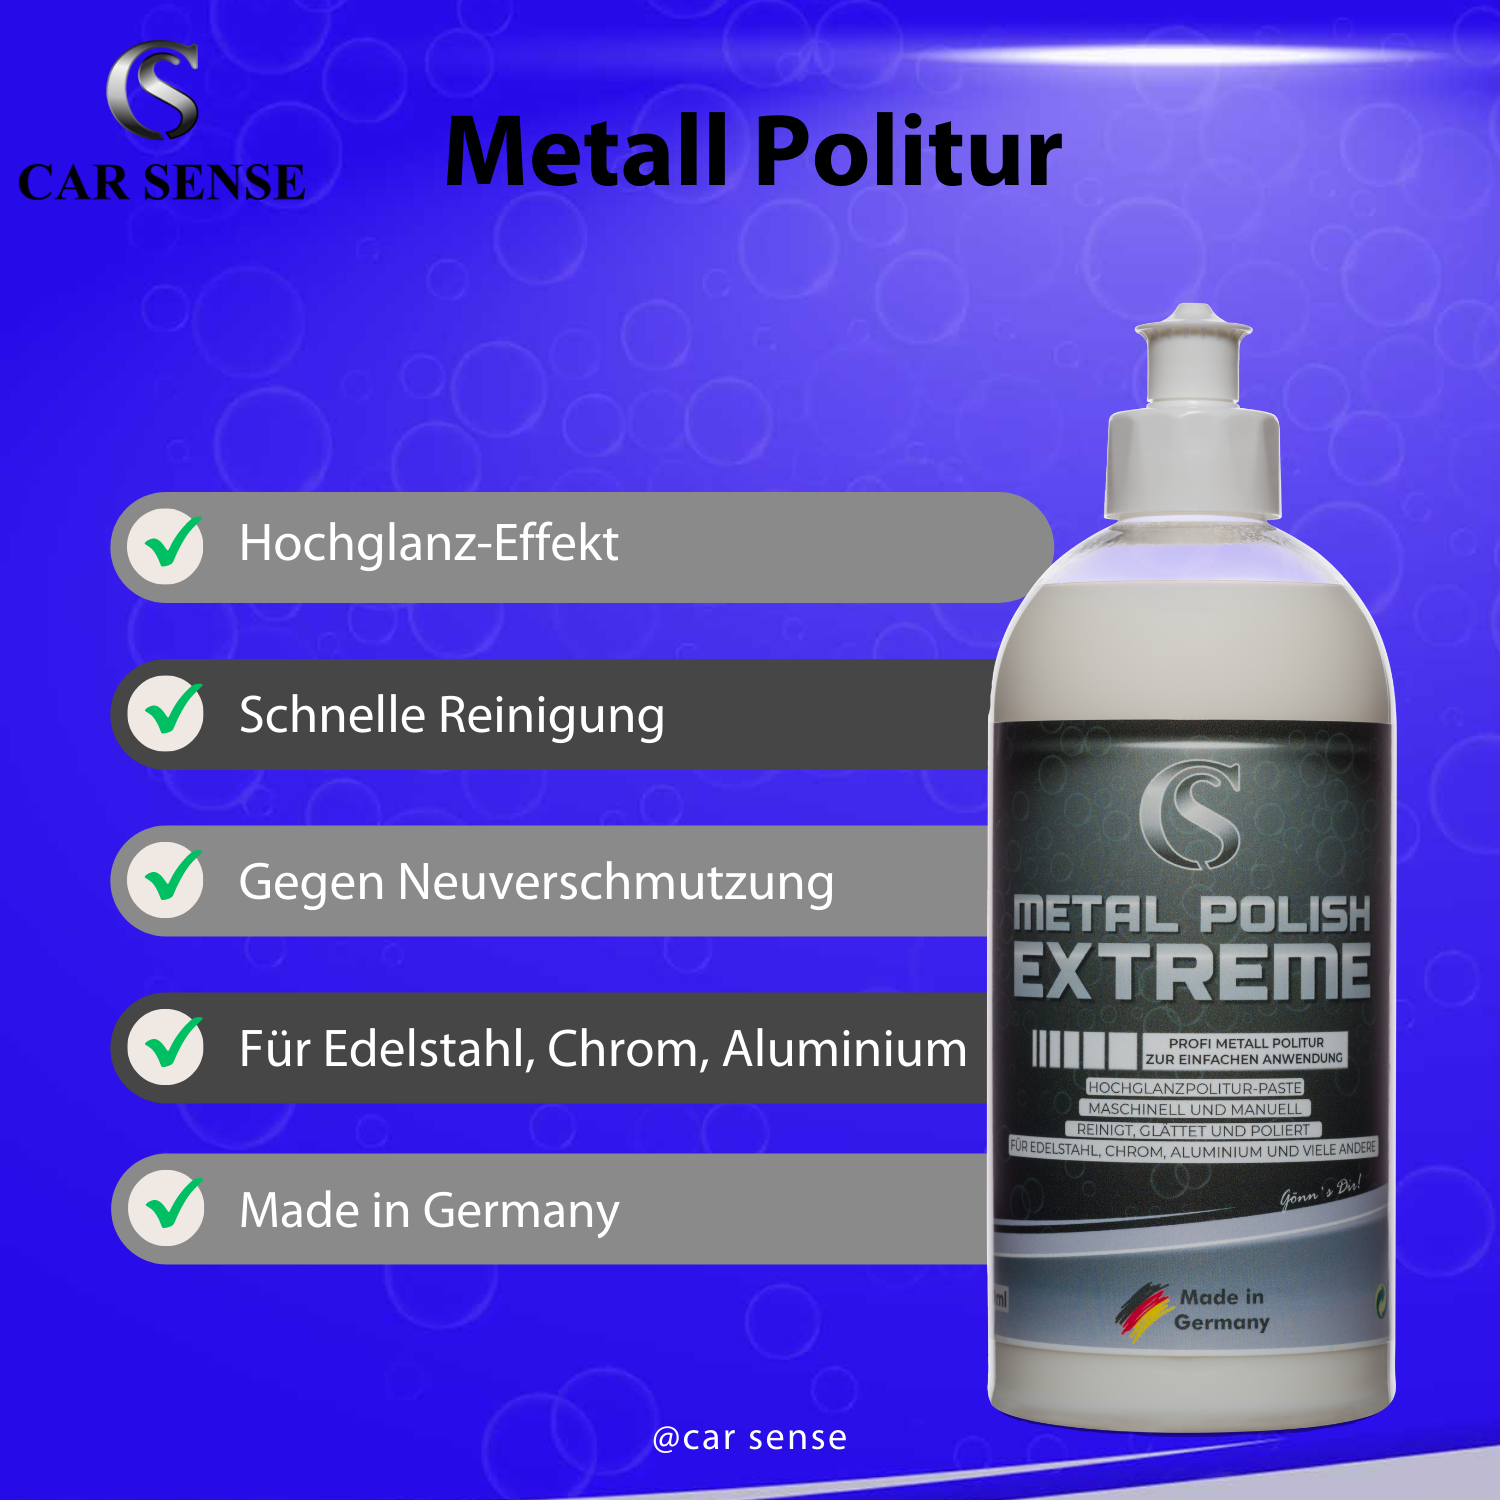 Car Sense Metal Polish ist eine Hochglanz-Veredelungs Politur auf Aluminiumoxidbasis 